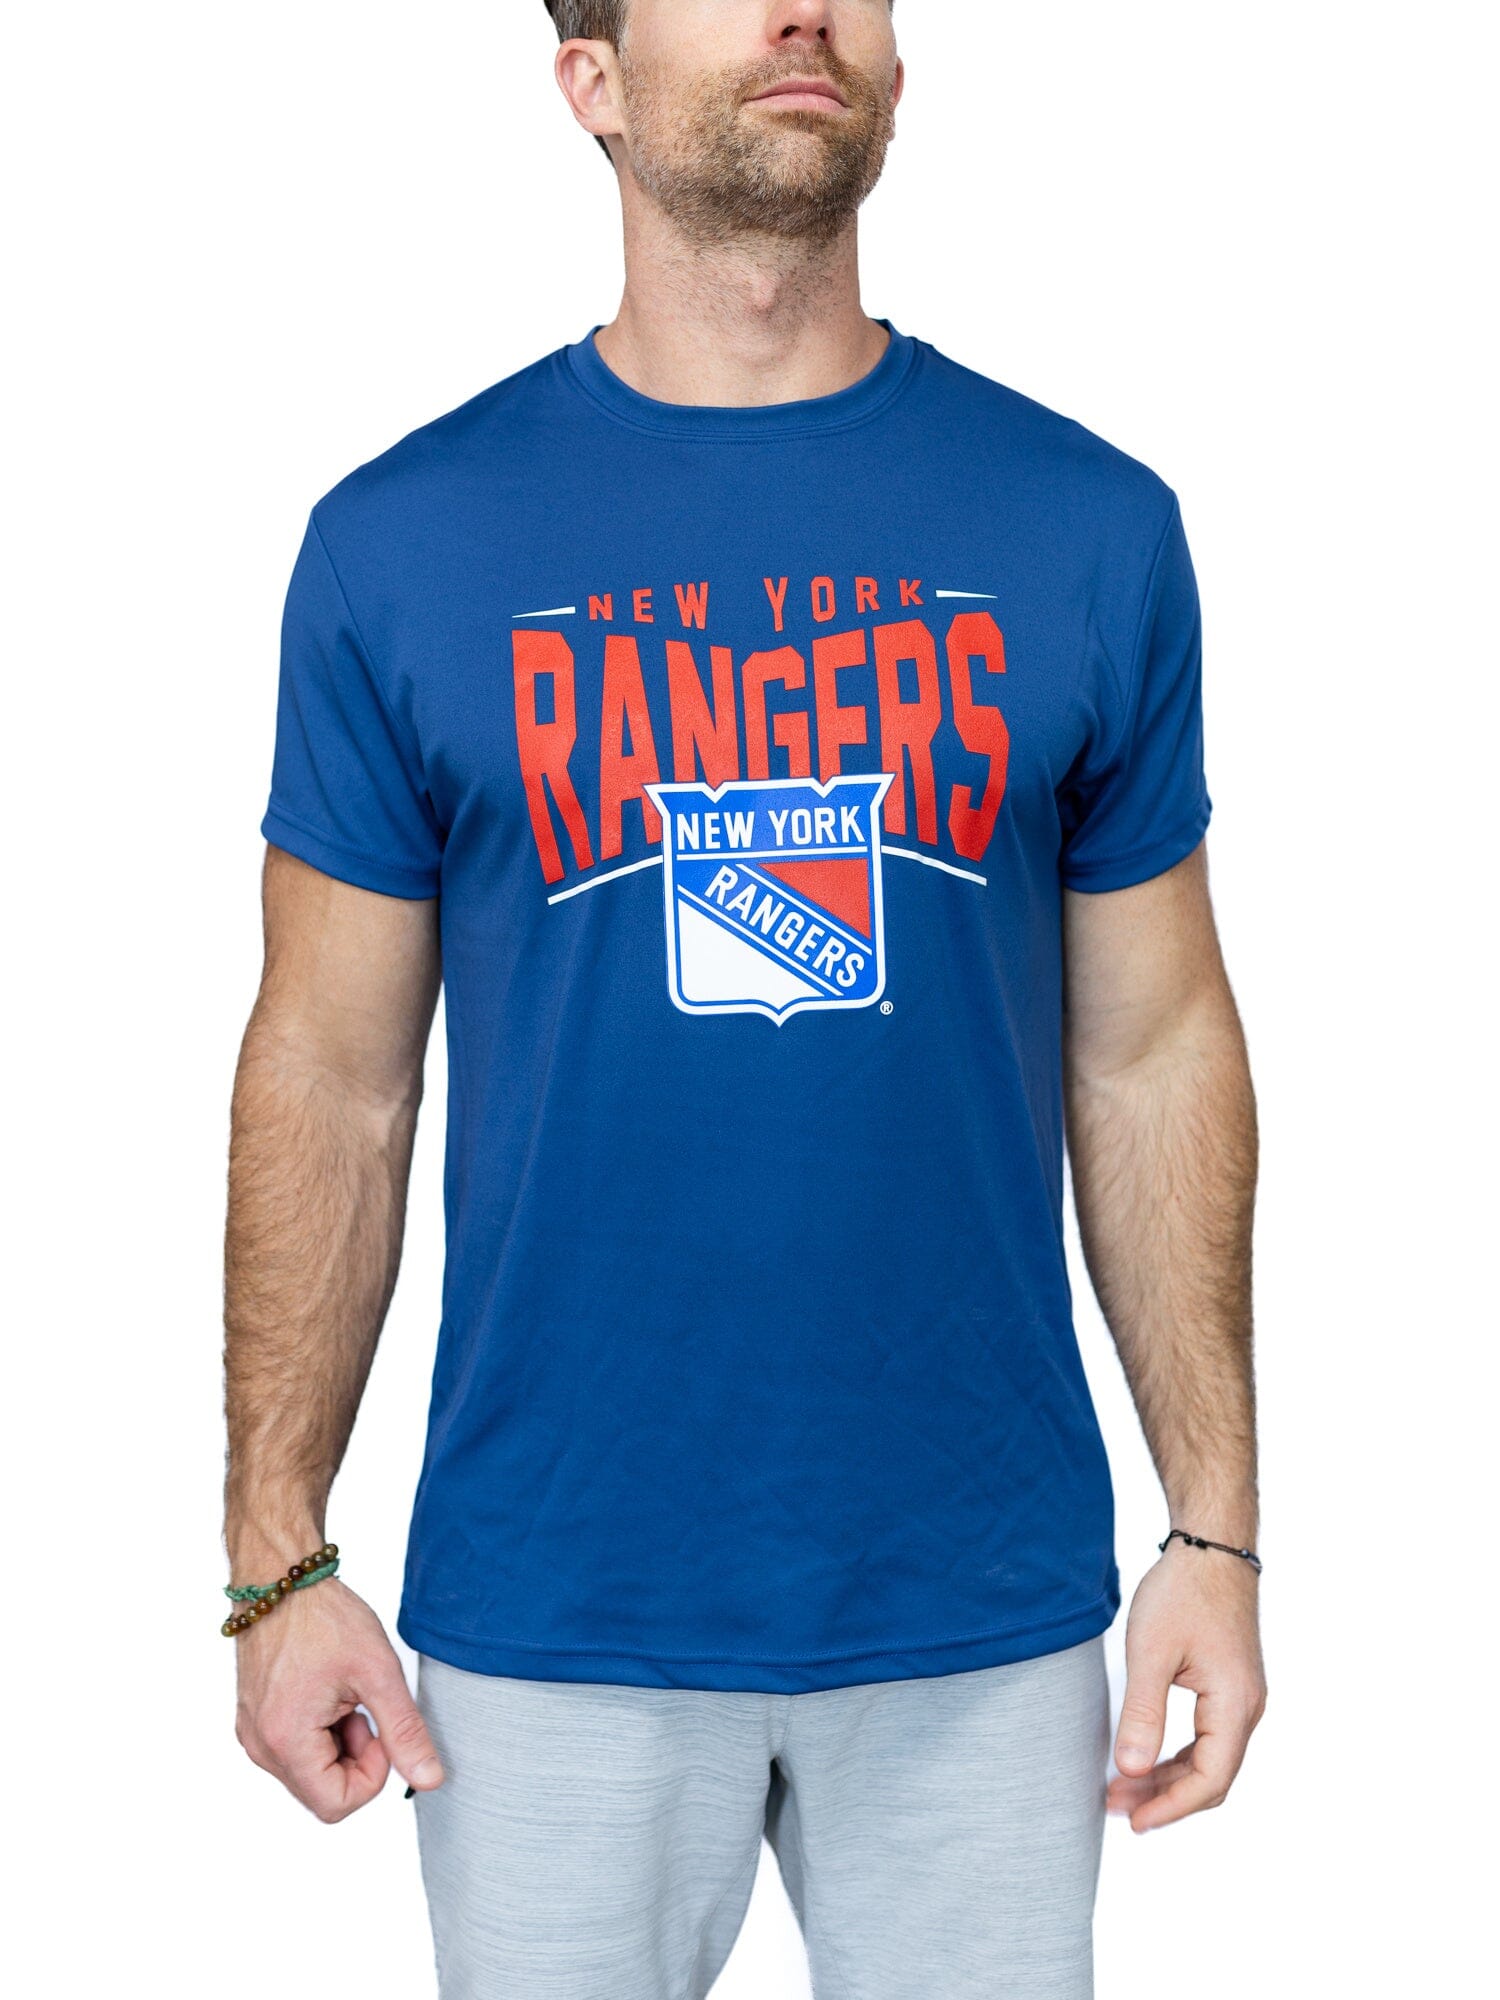 New York Rangers "Full Fandom" Moisture Wicking T-Shirt - Front